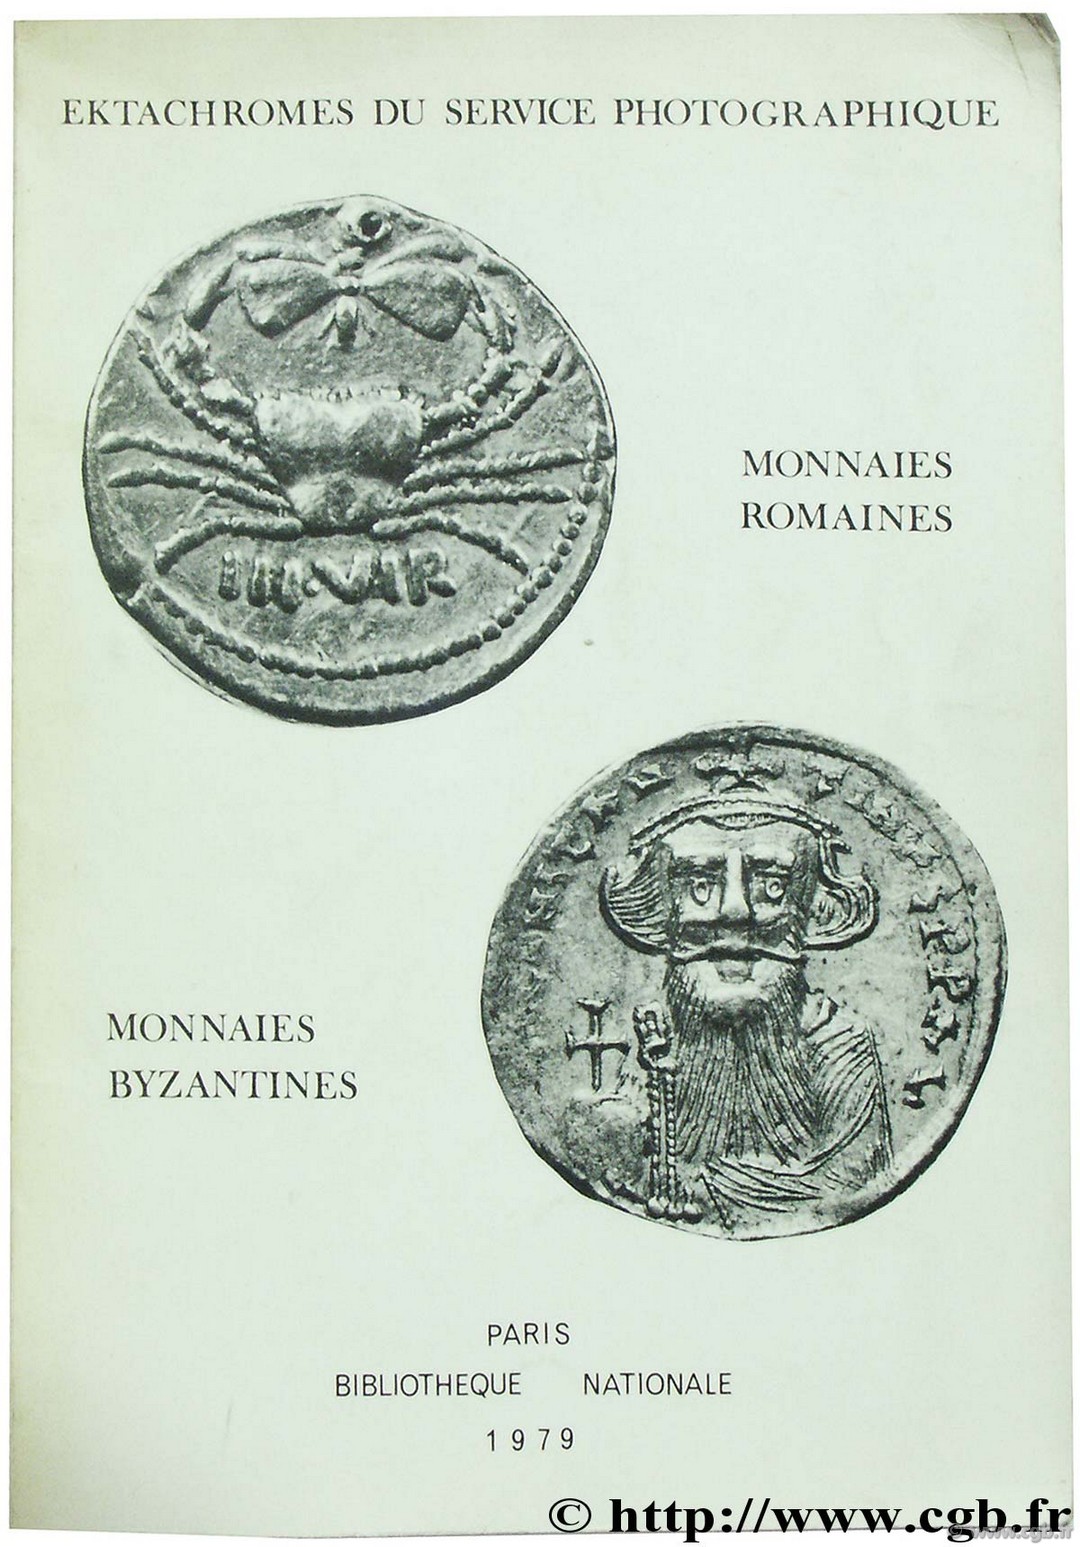 Choix de monnaies Romaines et Byzantines, Bibliothèque nationale photothèque PLOYART B., GIARD J.-B., MORRISSON C.